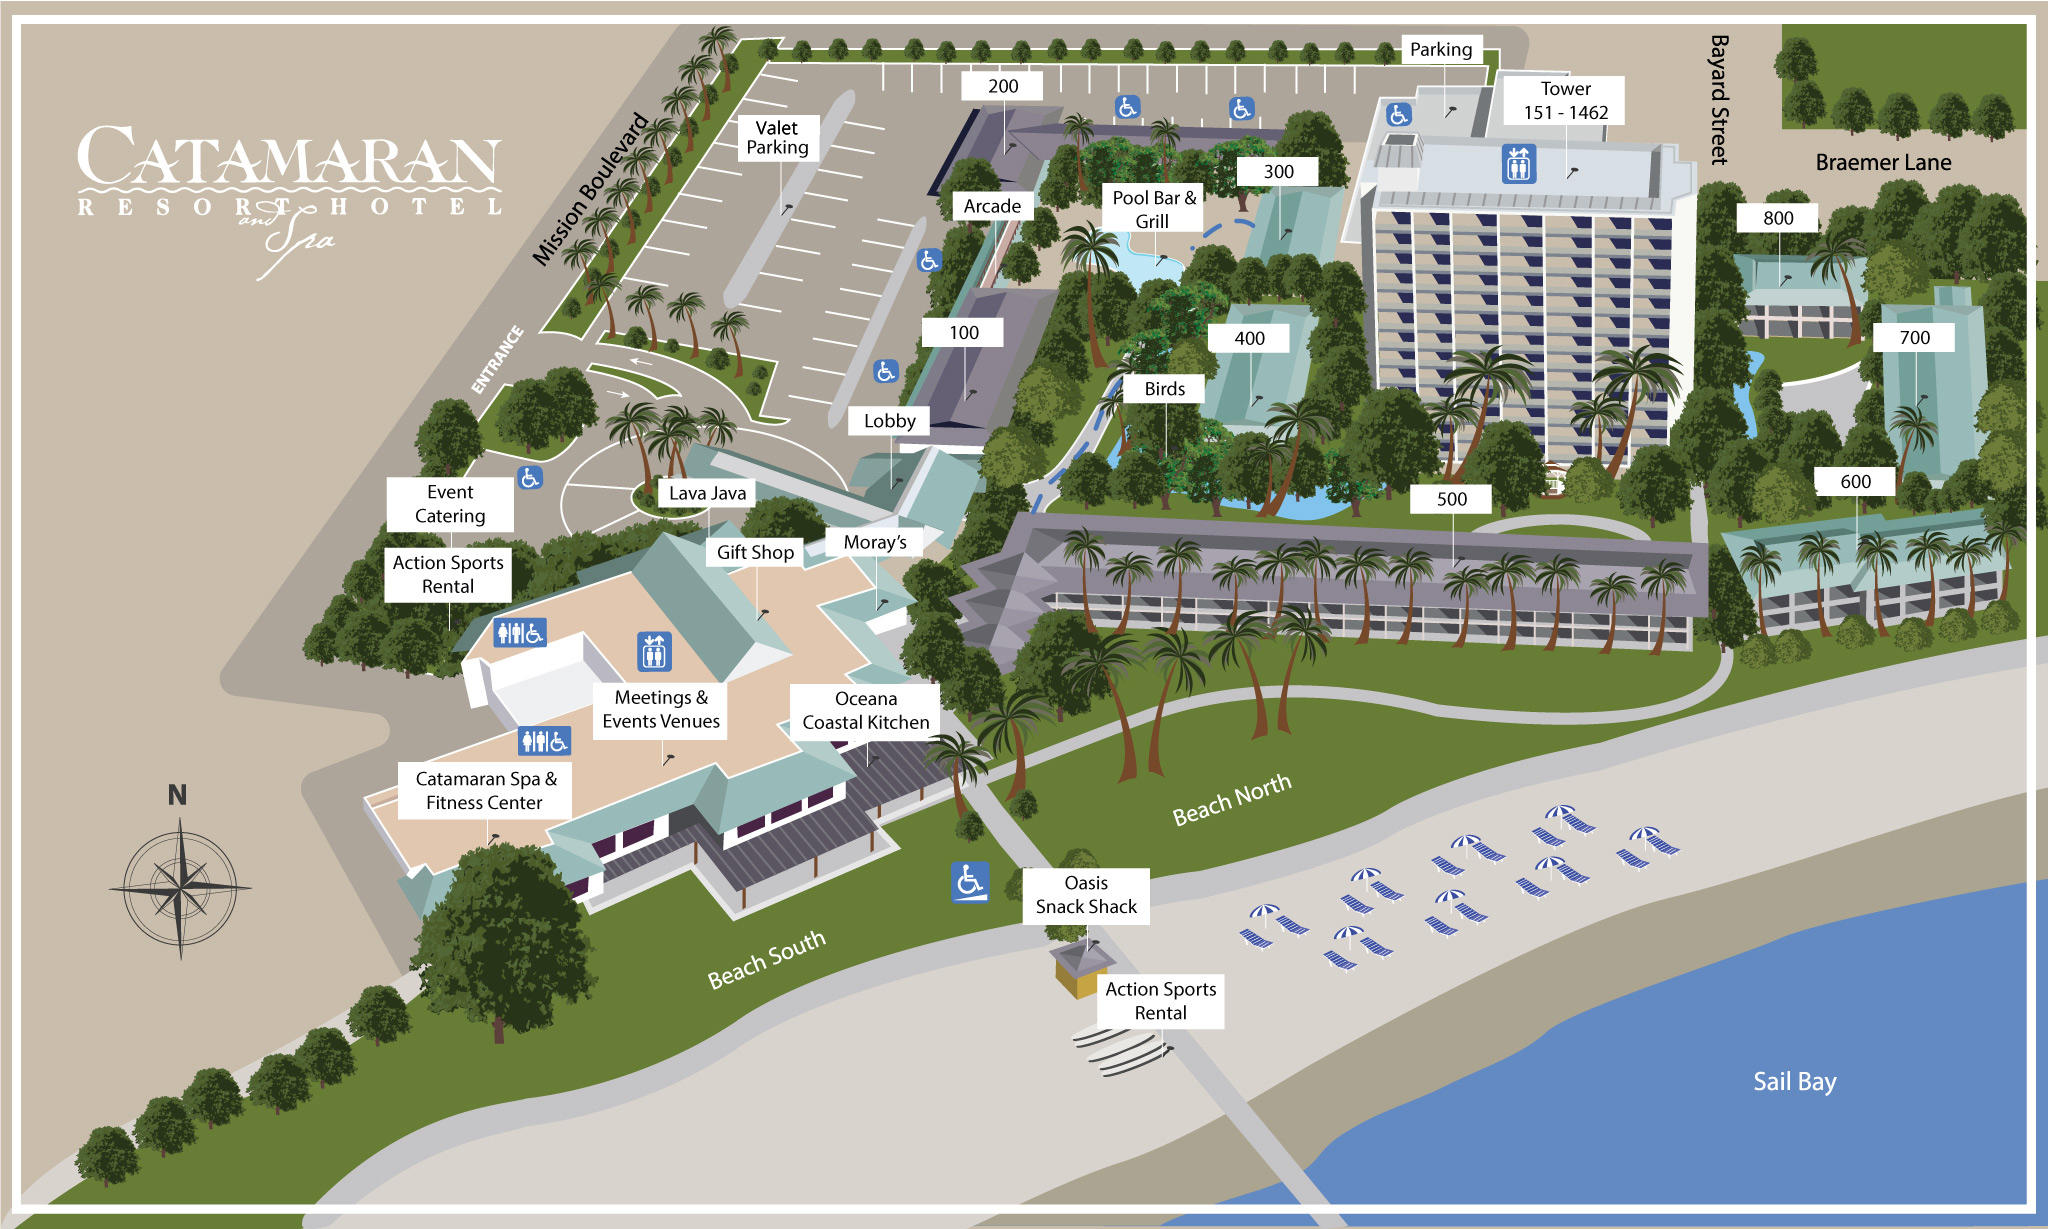 Catamaran Resort Hotel Property Map